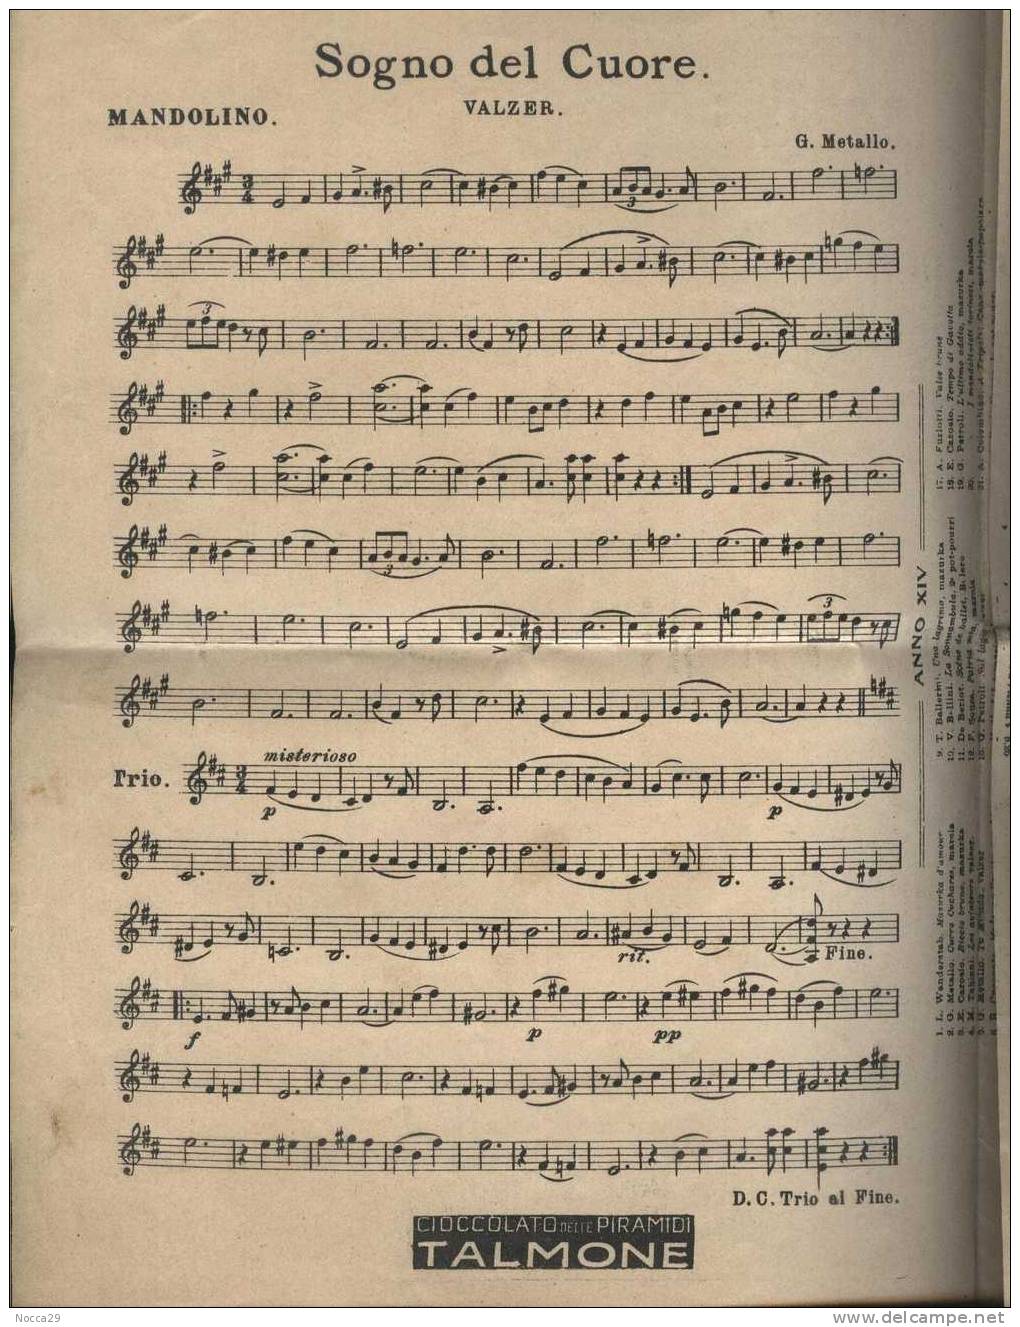 RIVISTA PIEGHEVOLE DEL 1912 IL MANDOLINISTA. MUSICHE PER MANDOLINO E CHITARRA - Musik